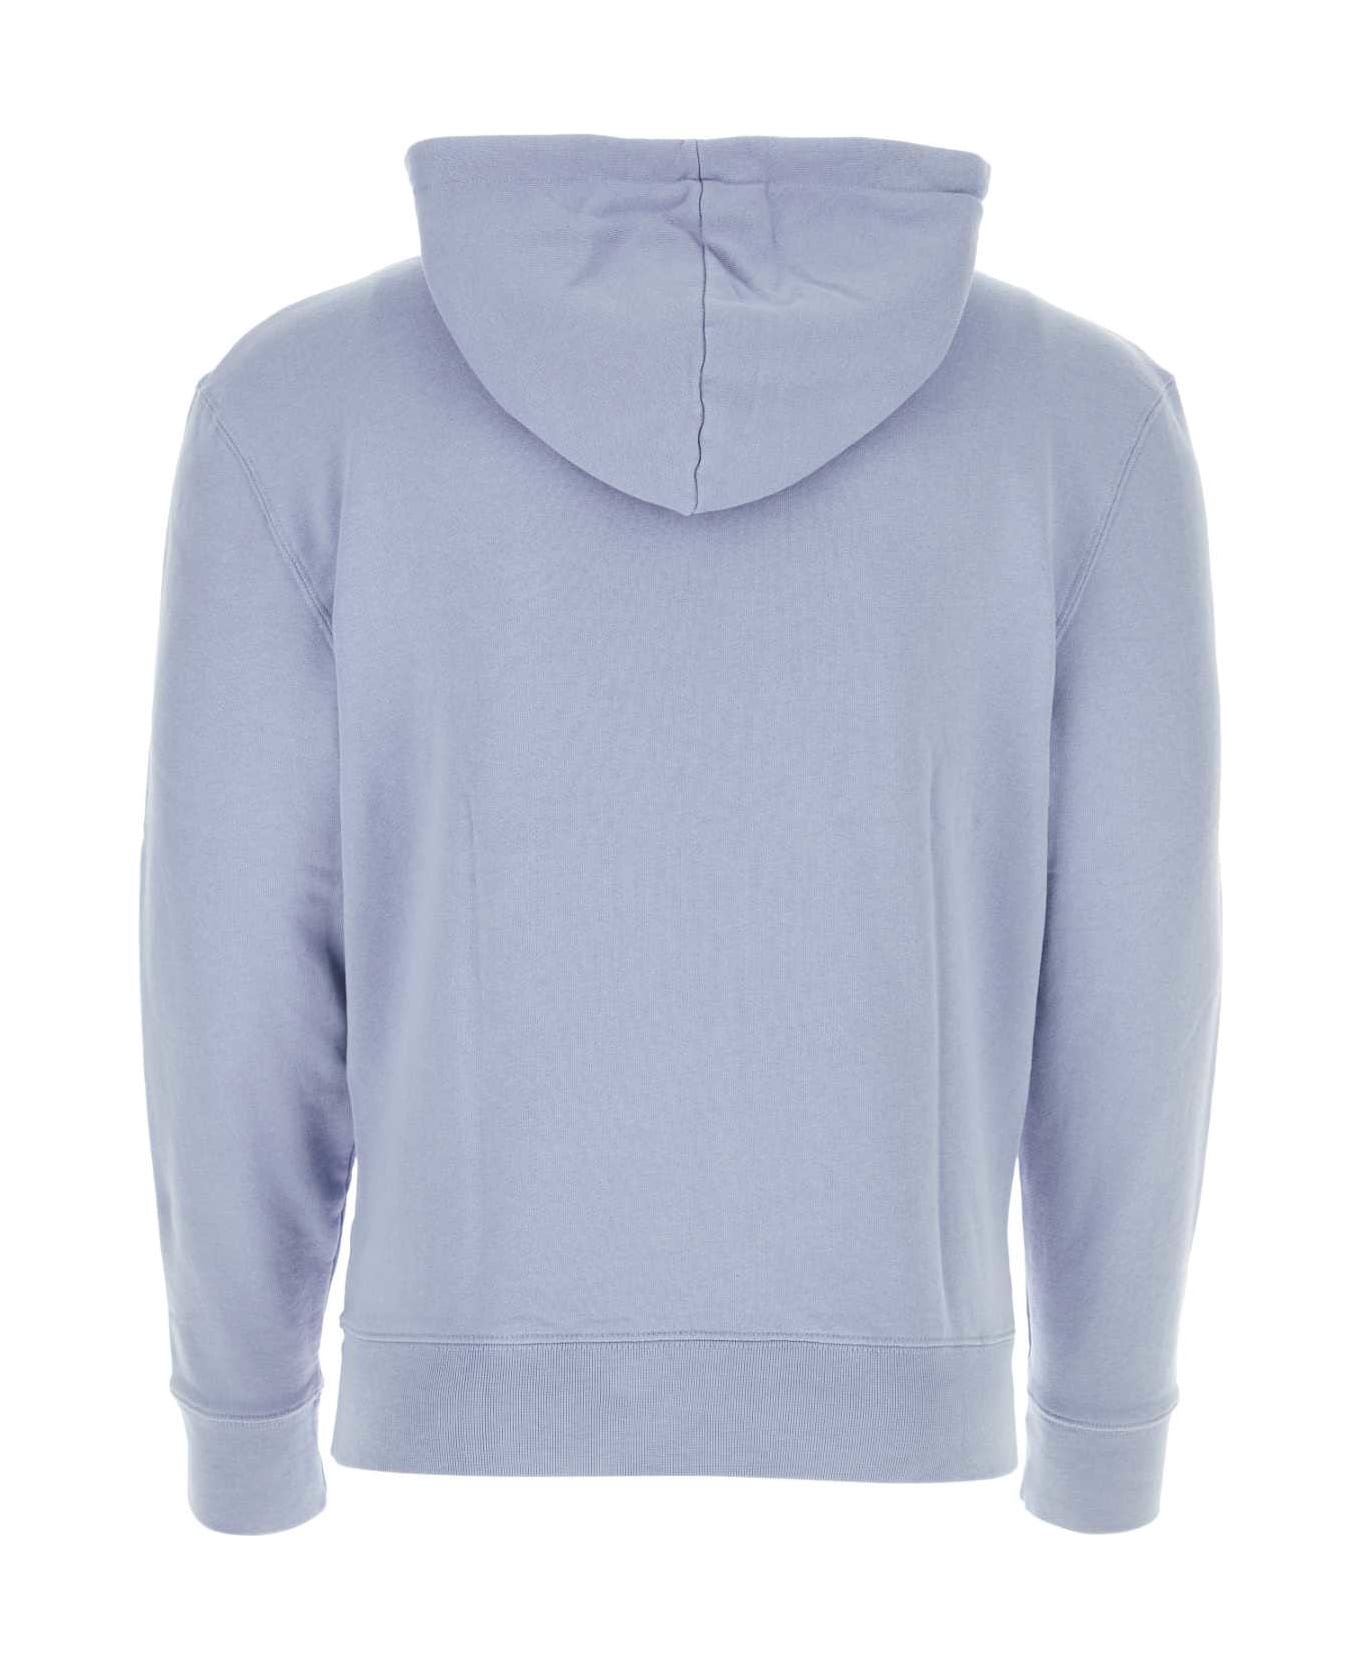 Maison Kitsuné Powder Blue Cotton Sweatshirt - BEATBLUE